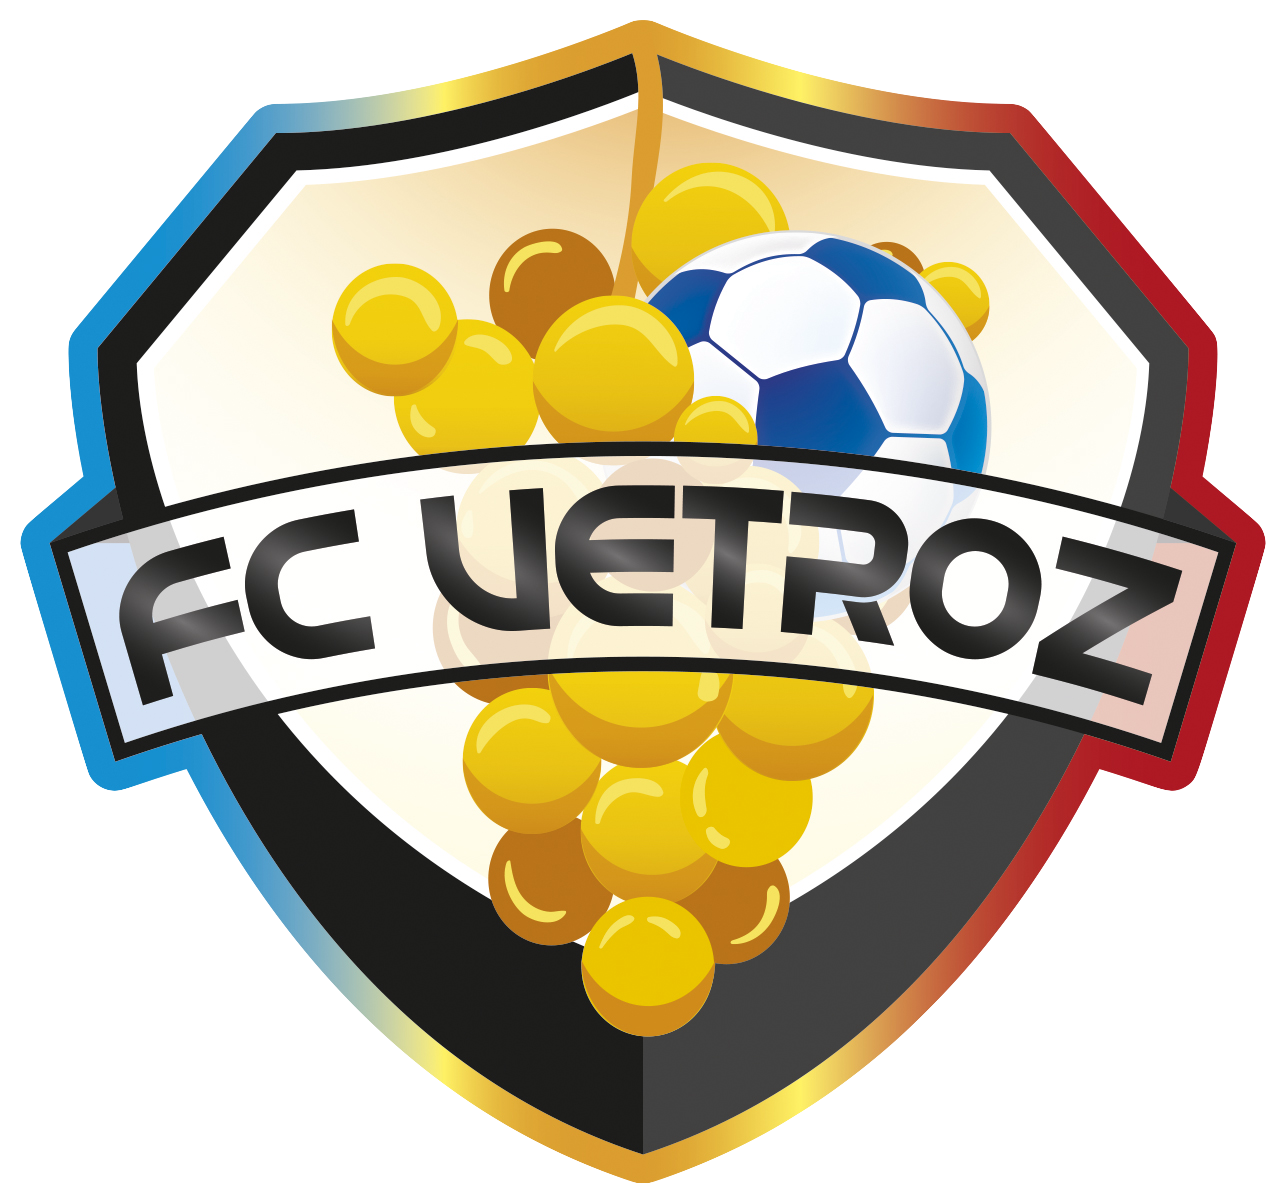 Wappen FC Vétroz diverse